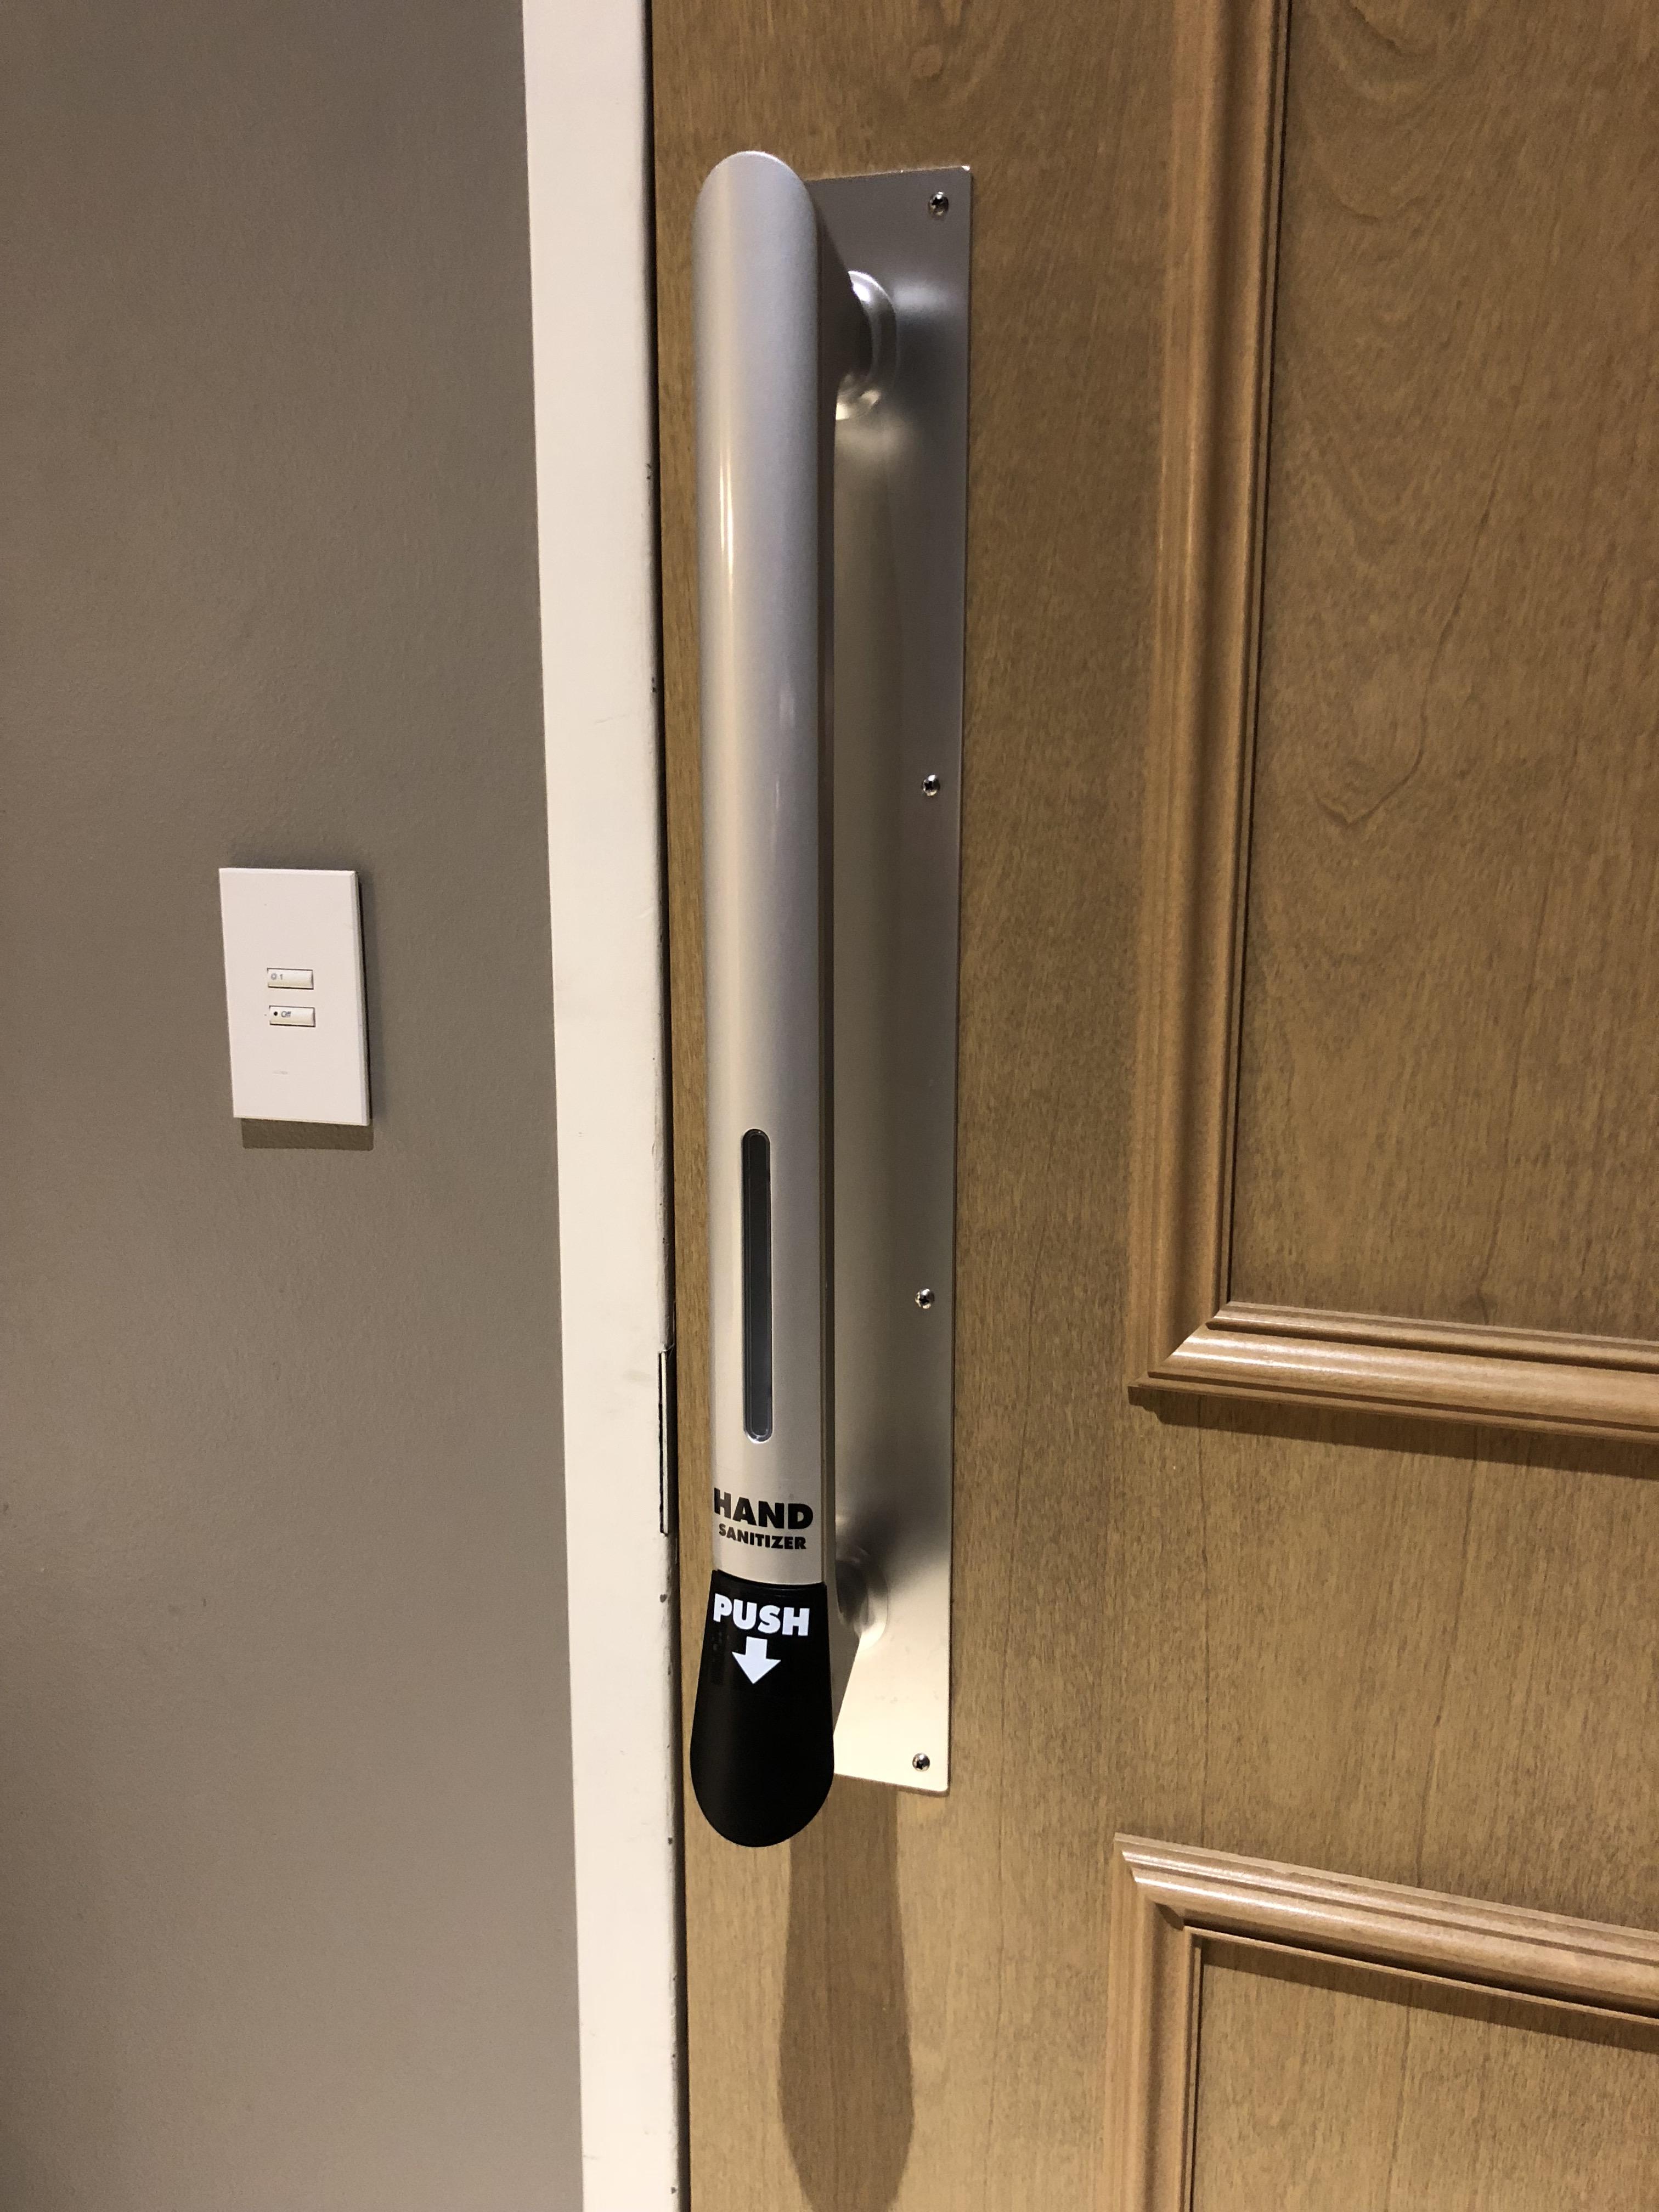 This bathroom door handle has a built-in hand sanitizer dispenser ...